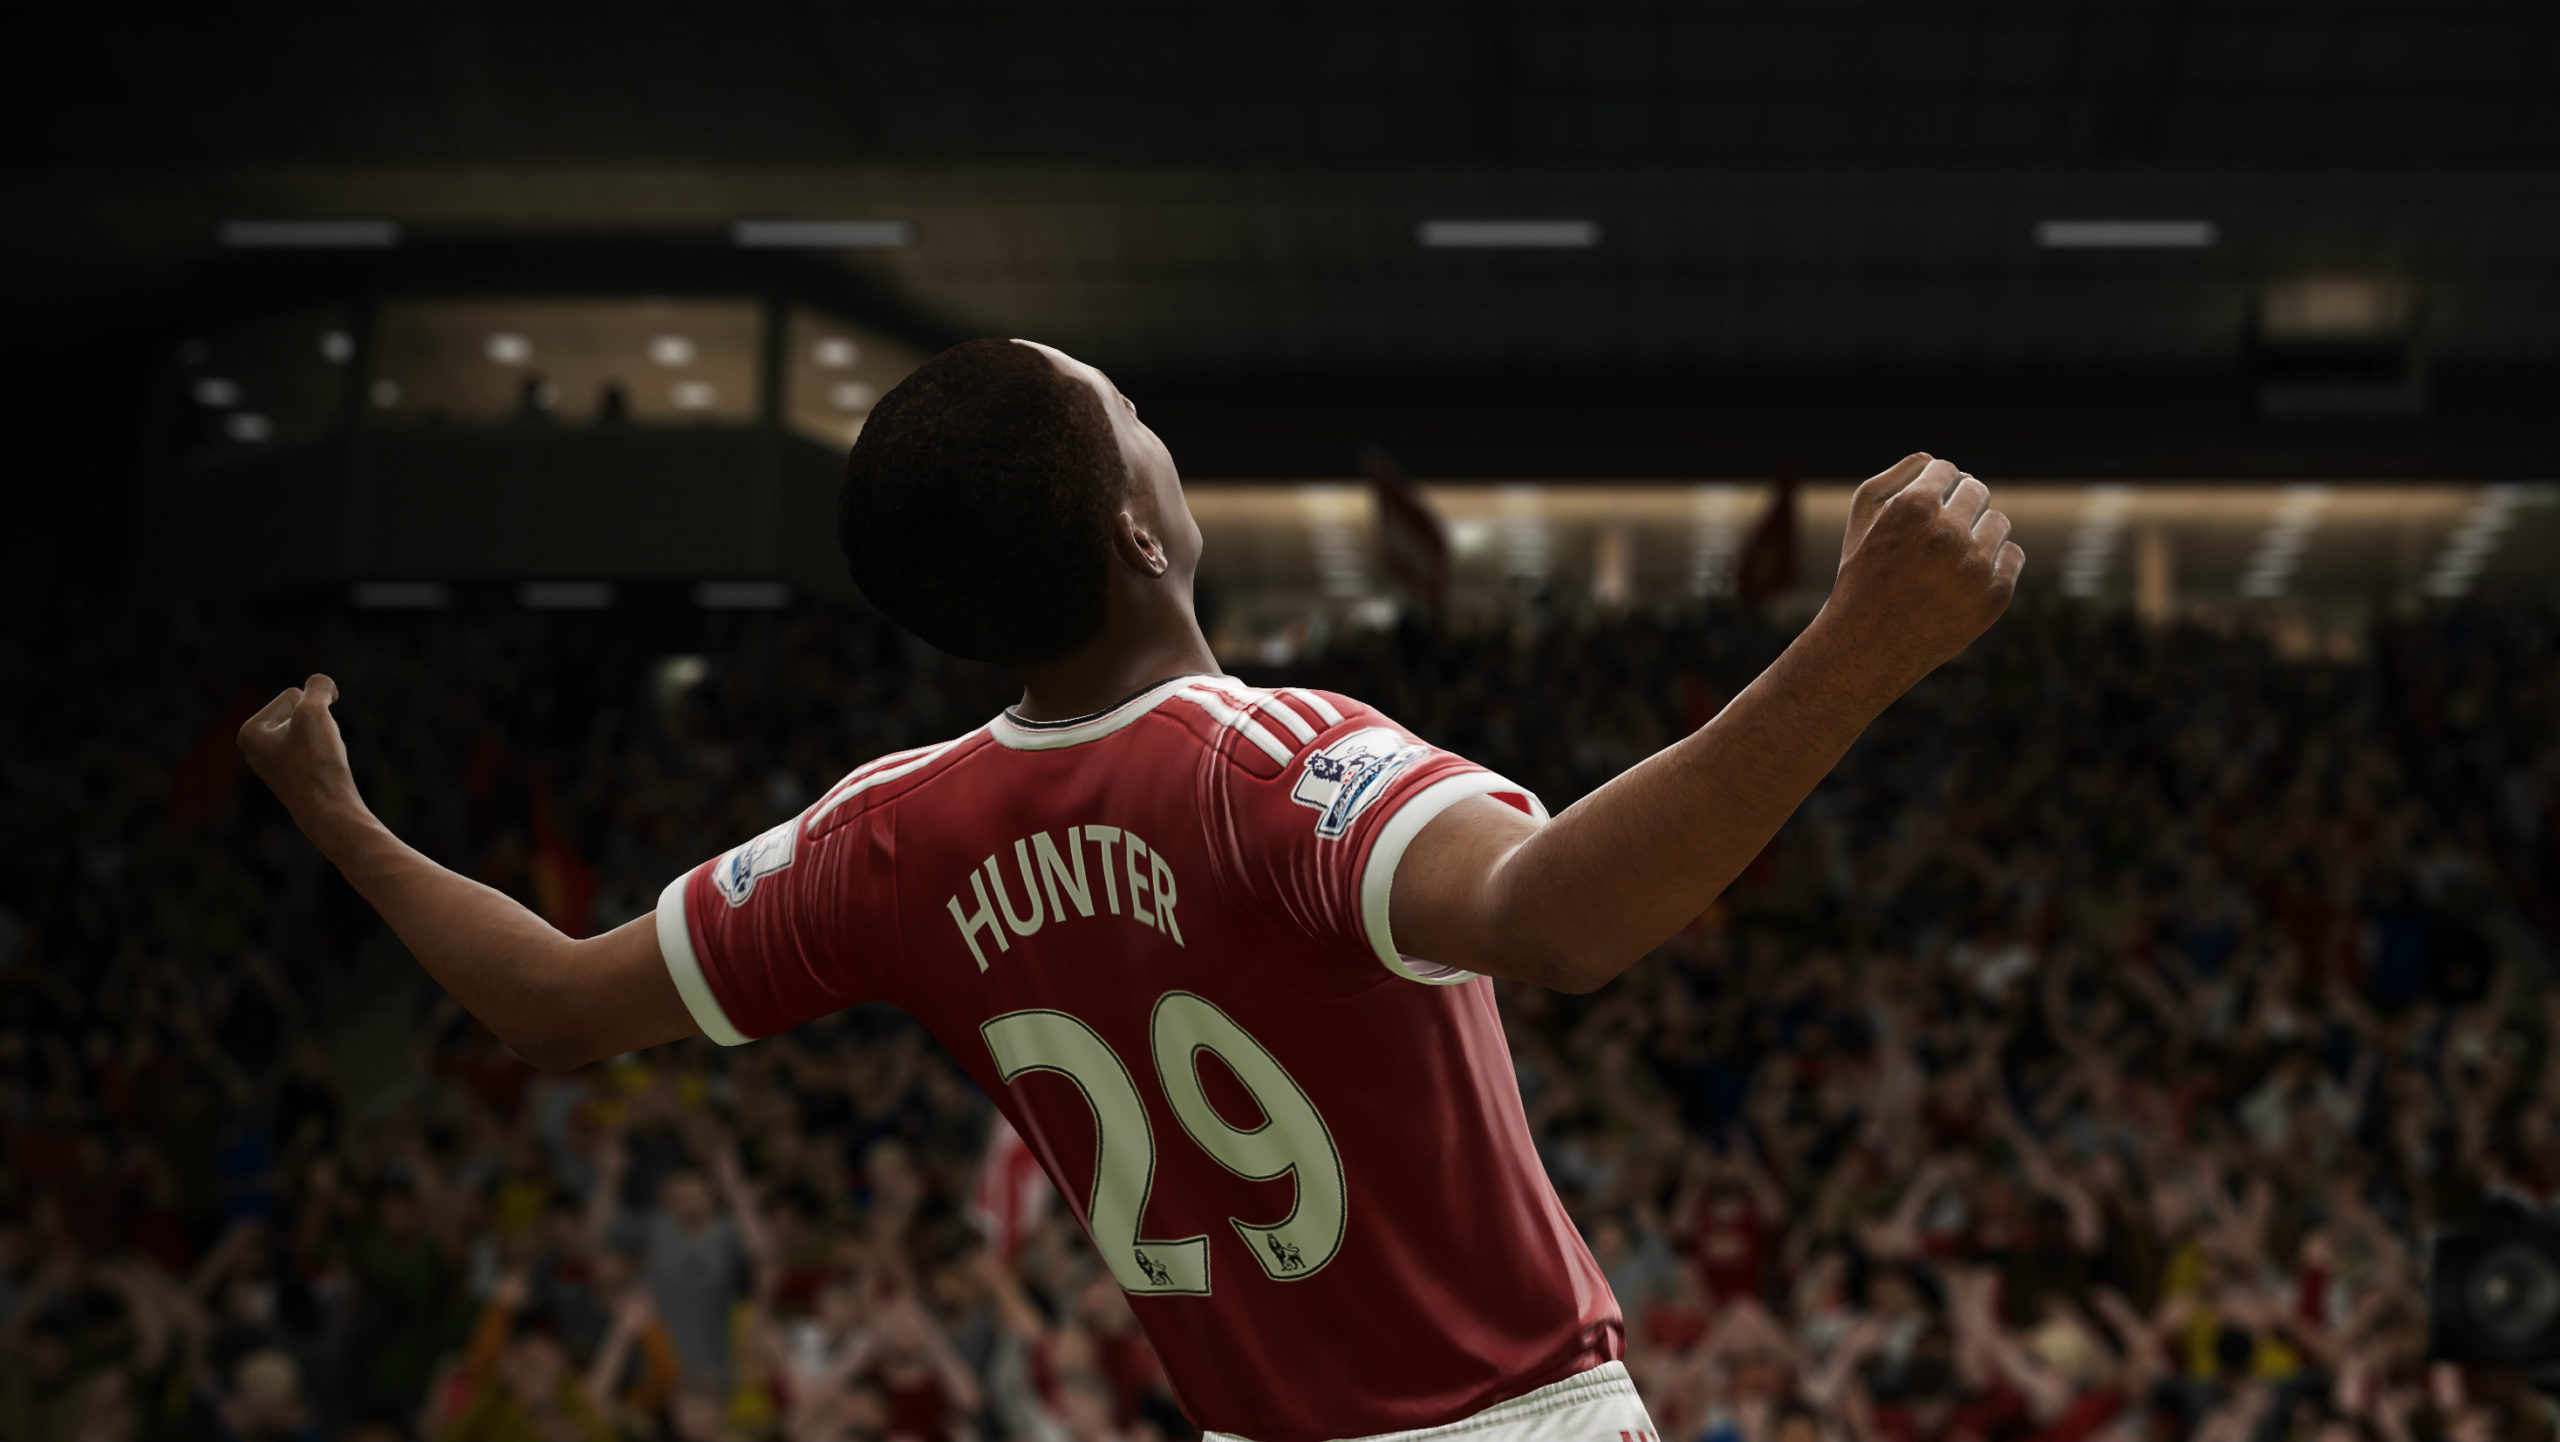 FIFA 17’s The Journey: Imperfect, aber EA könnte etwas ganz Besonderes haben, wenn sie dabei bleiben